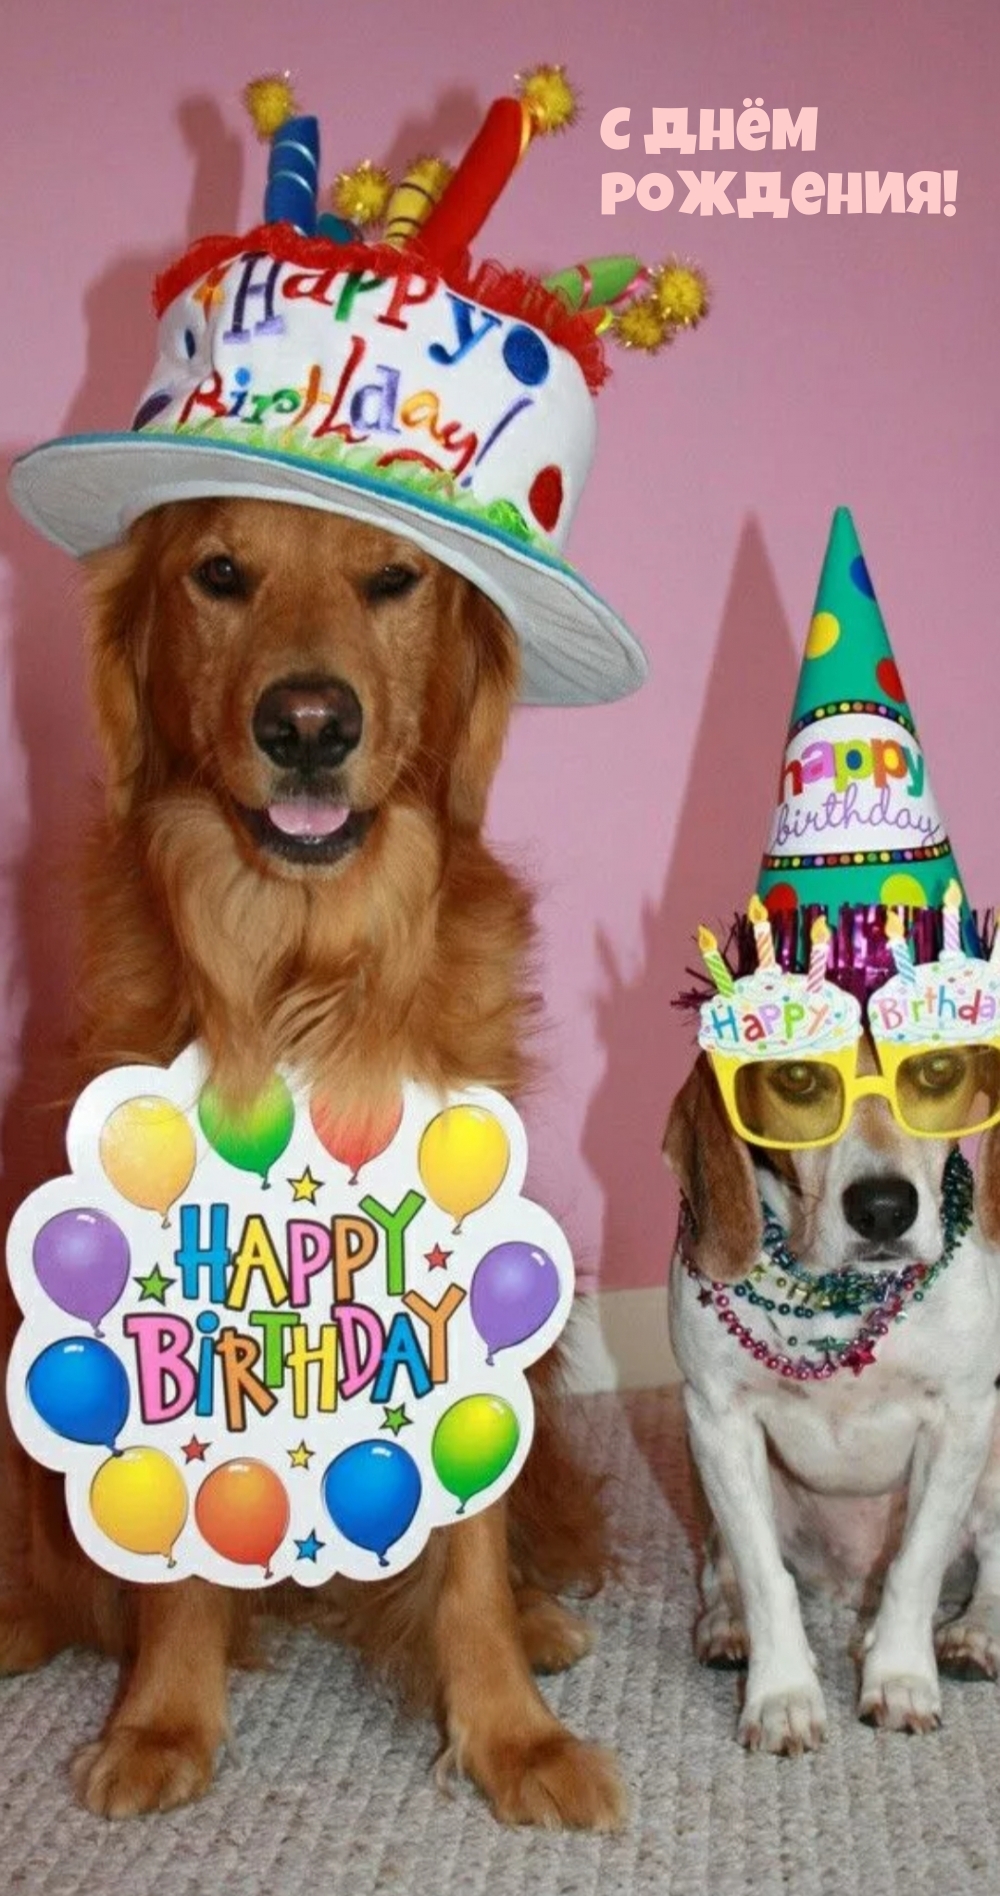 С днем рождения картинки с собачкой. С днём рождения собачки. Открытки с днём рождения с собаками. Собака в праздничном колпаке. Праздник для собаки на день рождения.